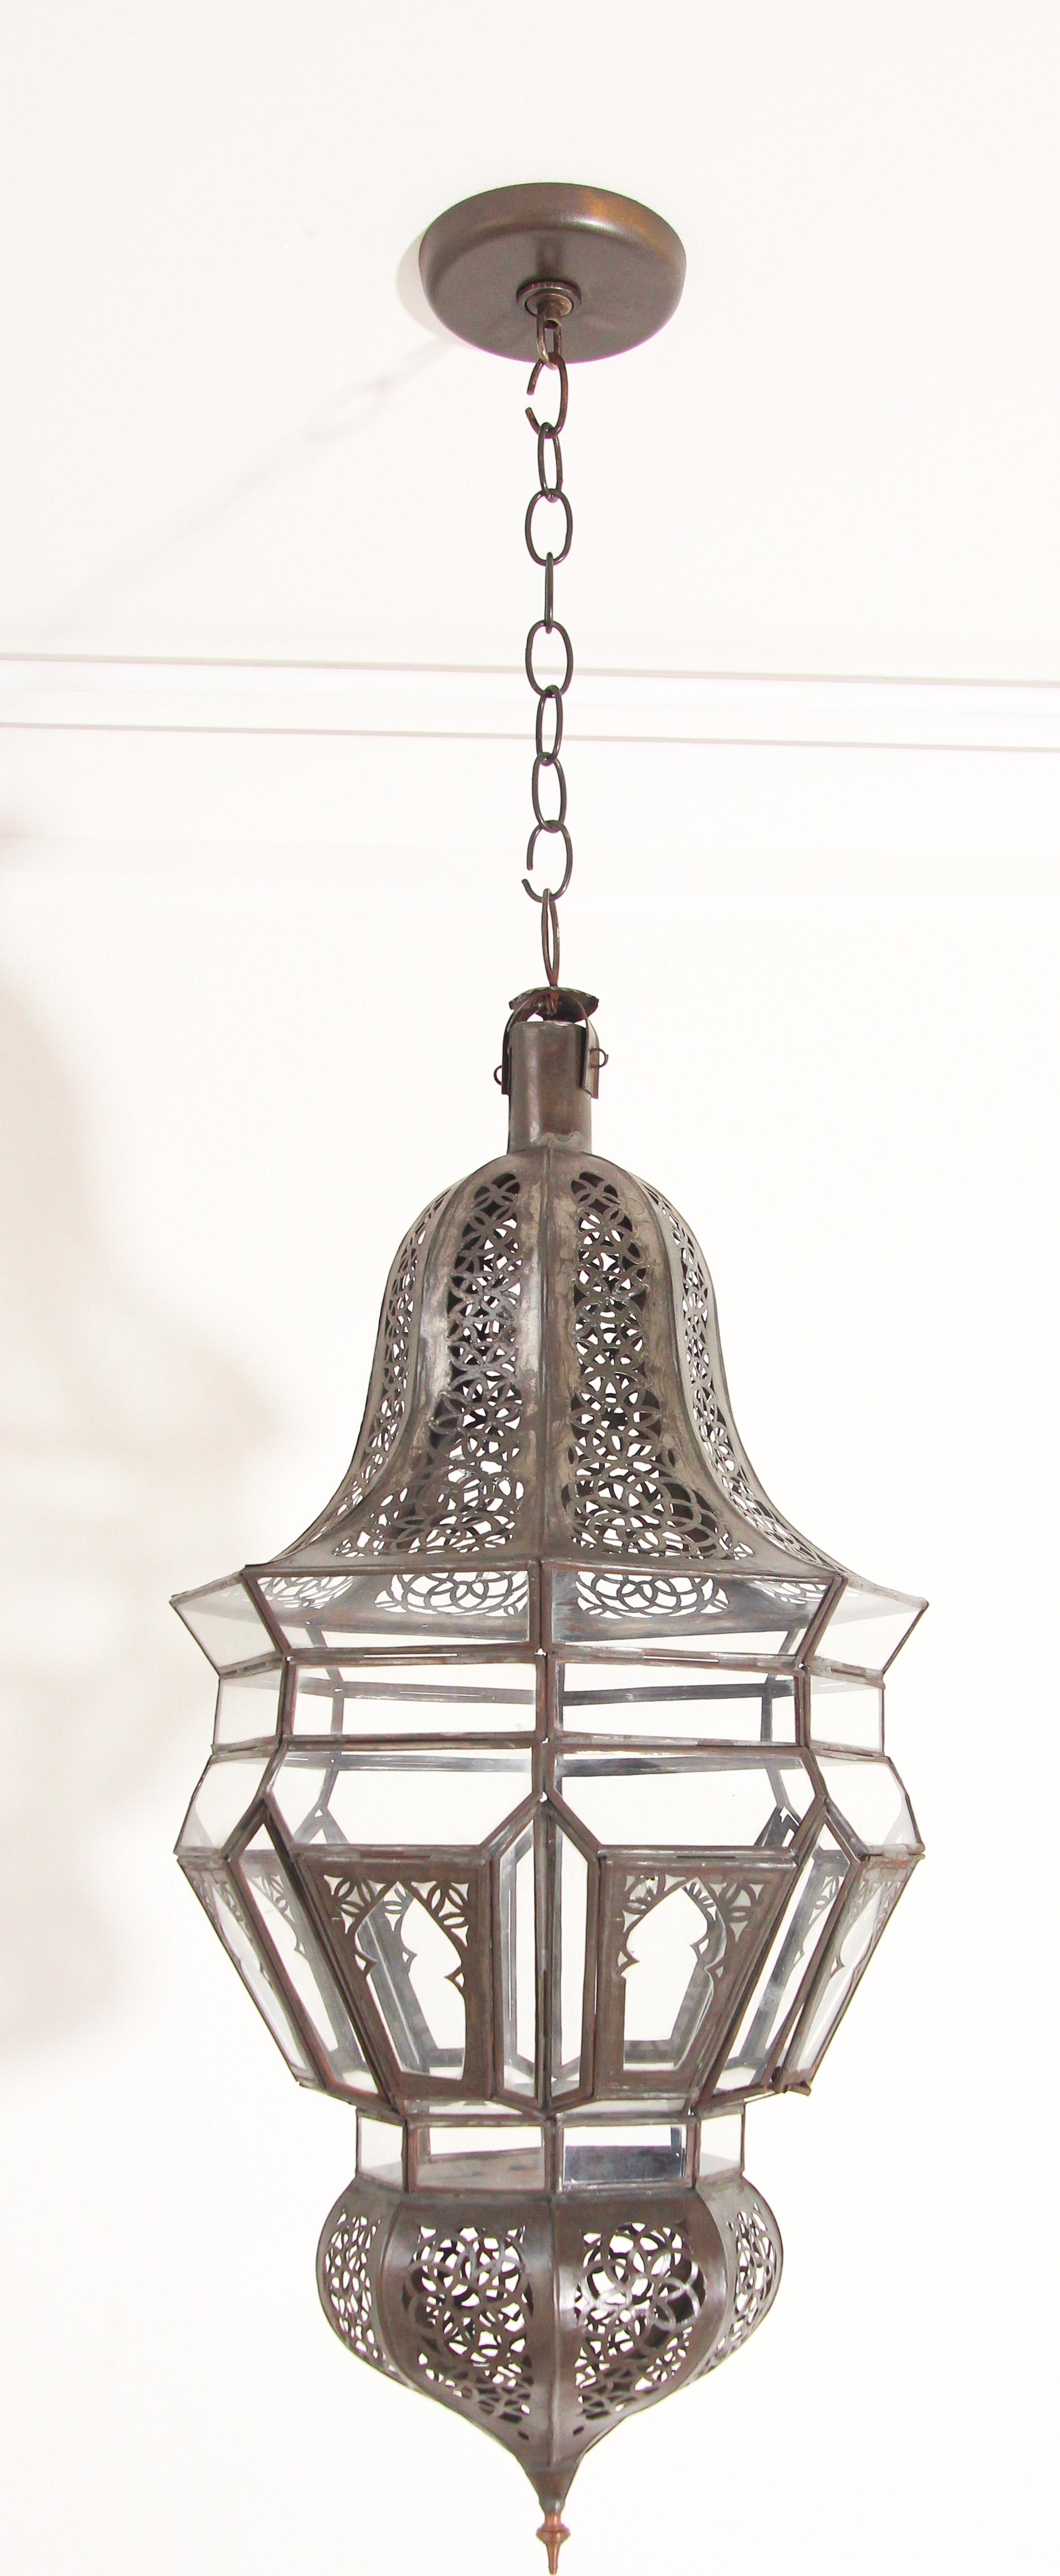 Lanterne Harem suspendue en verre clair mauresque marocain avec filigrane métallique complexe.
Lanterne marocaine en verre délicatement fabriquée à la main par des artisans au Maroc.
Finition en métal couleur bronze.
Il s'agit simplement d'un